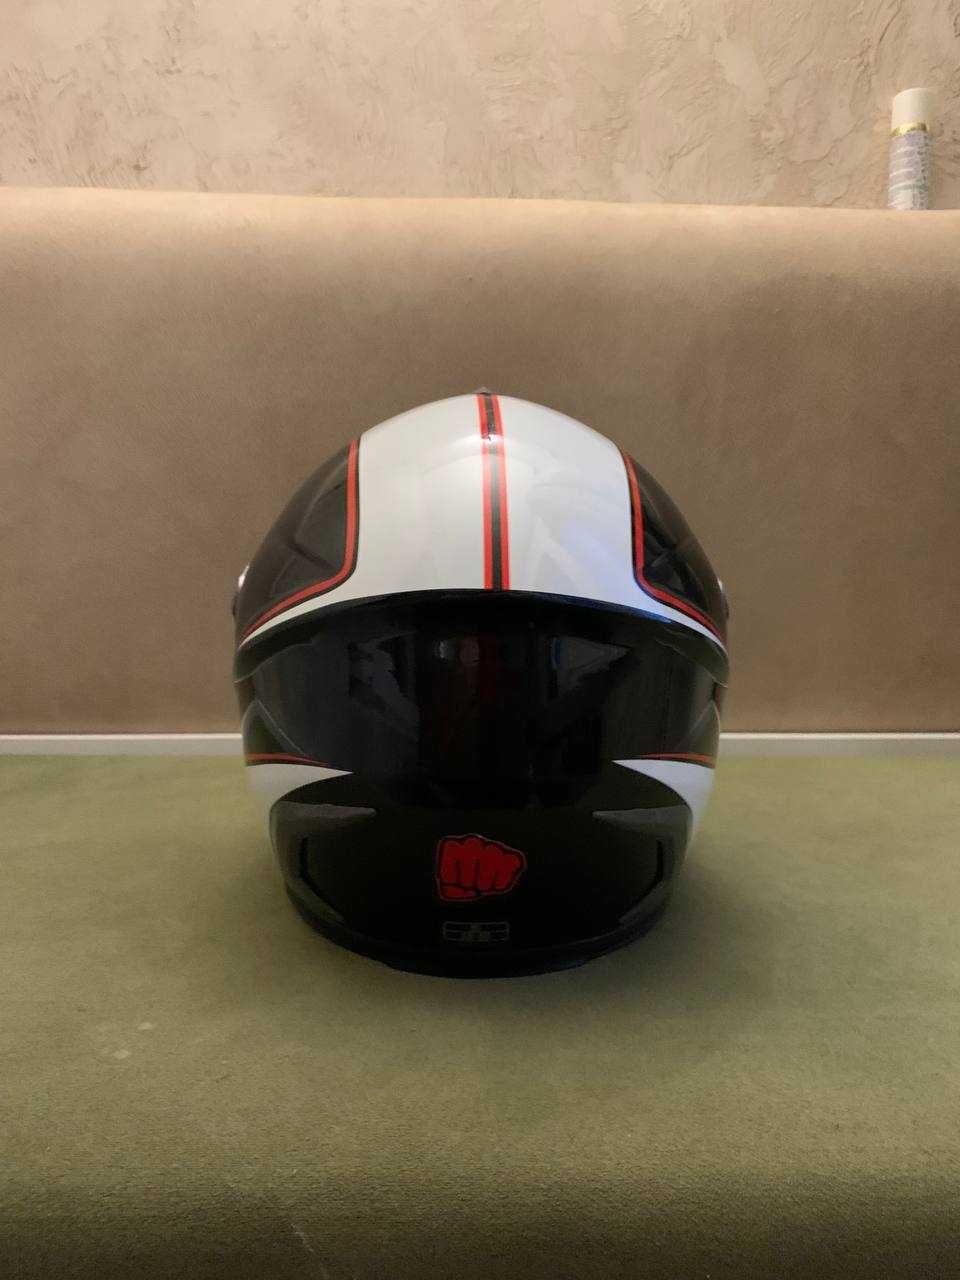 Мотошлем FXW Helmet размера S